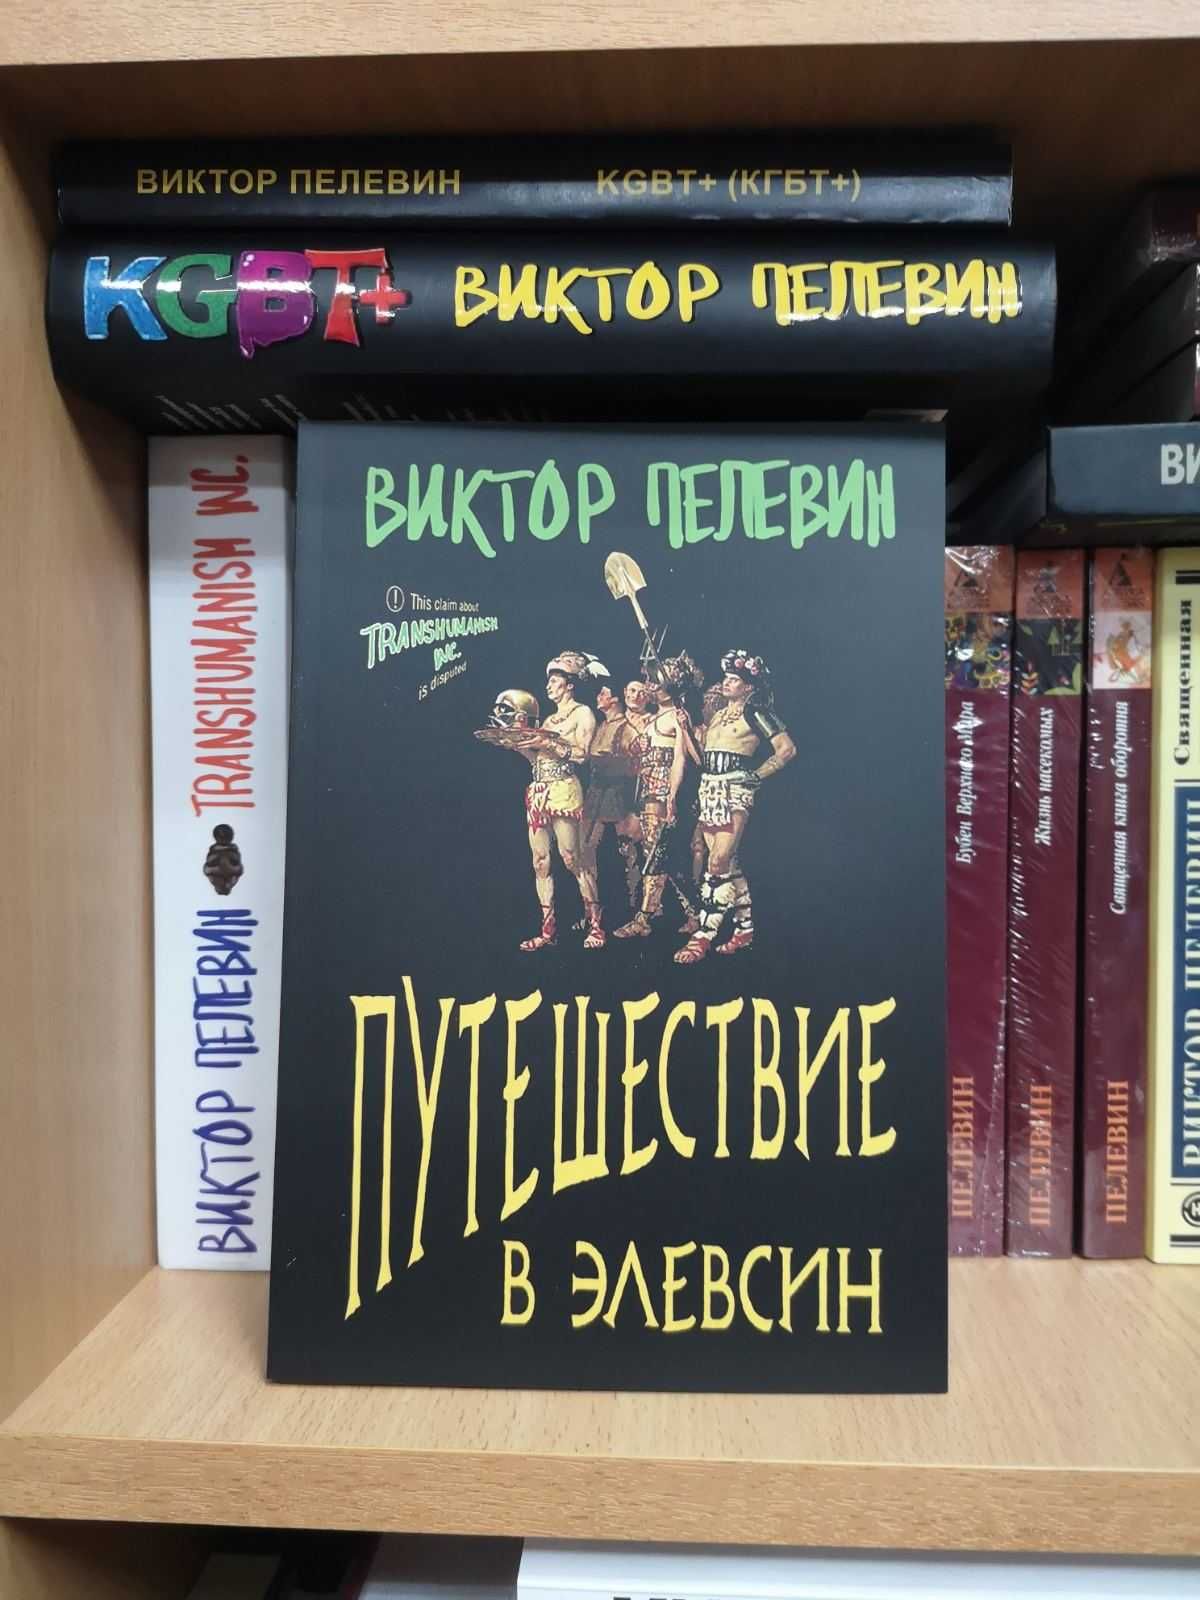 Виктор Пелевин "Путешествие в Элевсин" (мягкий и твёрдый) и др. книги